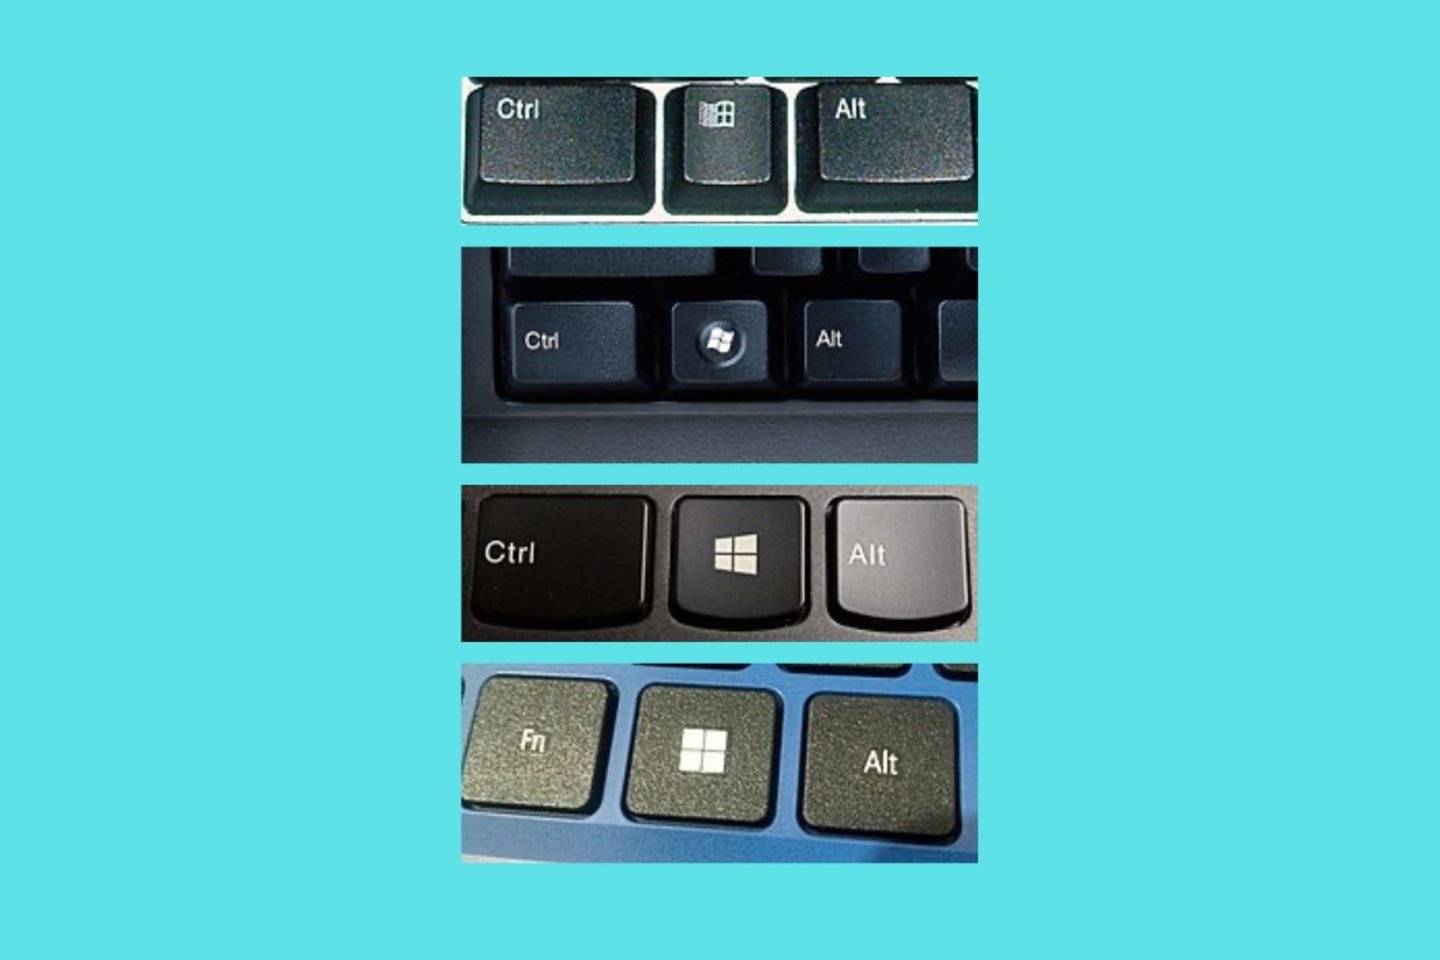 Para qué sirve la tecla de Windows del teclado y qué atajos puedes hacer con ella